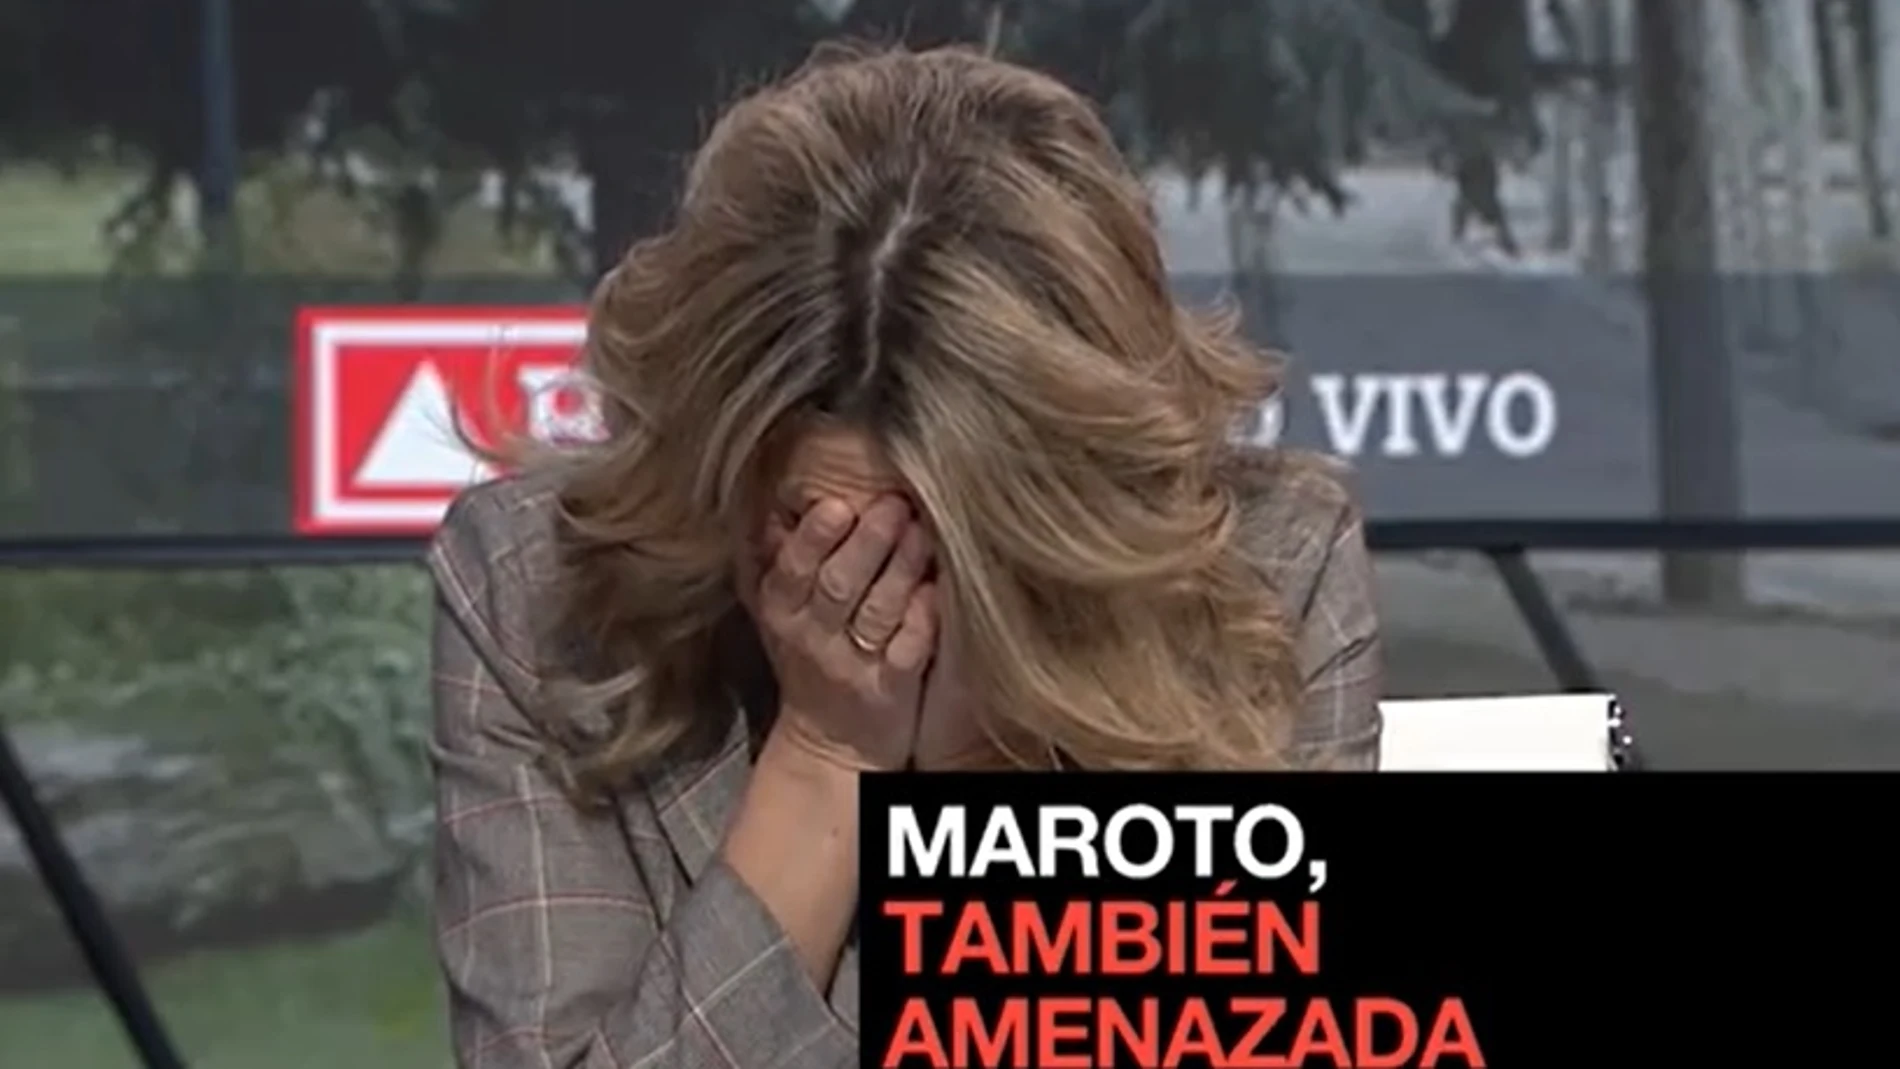 La reacción de la vicepresidenta tercera Yolanda Díaz al conocer las amenazas a la ministra Reyes Maroto